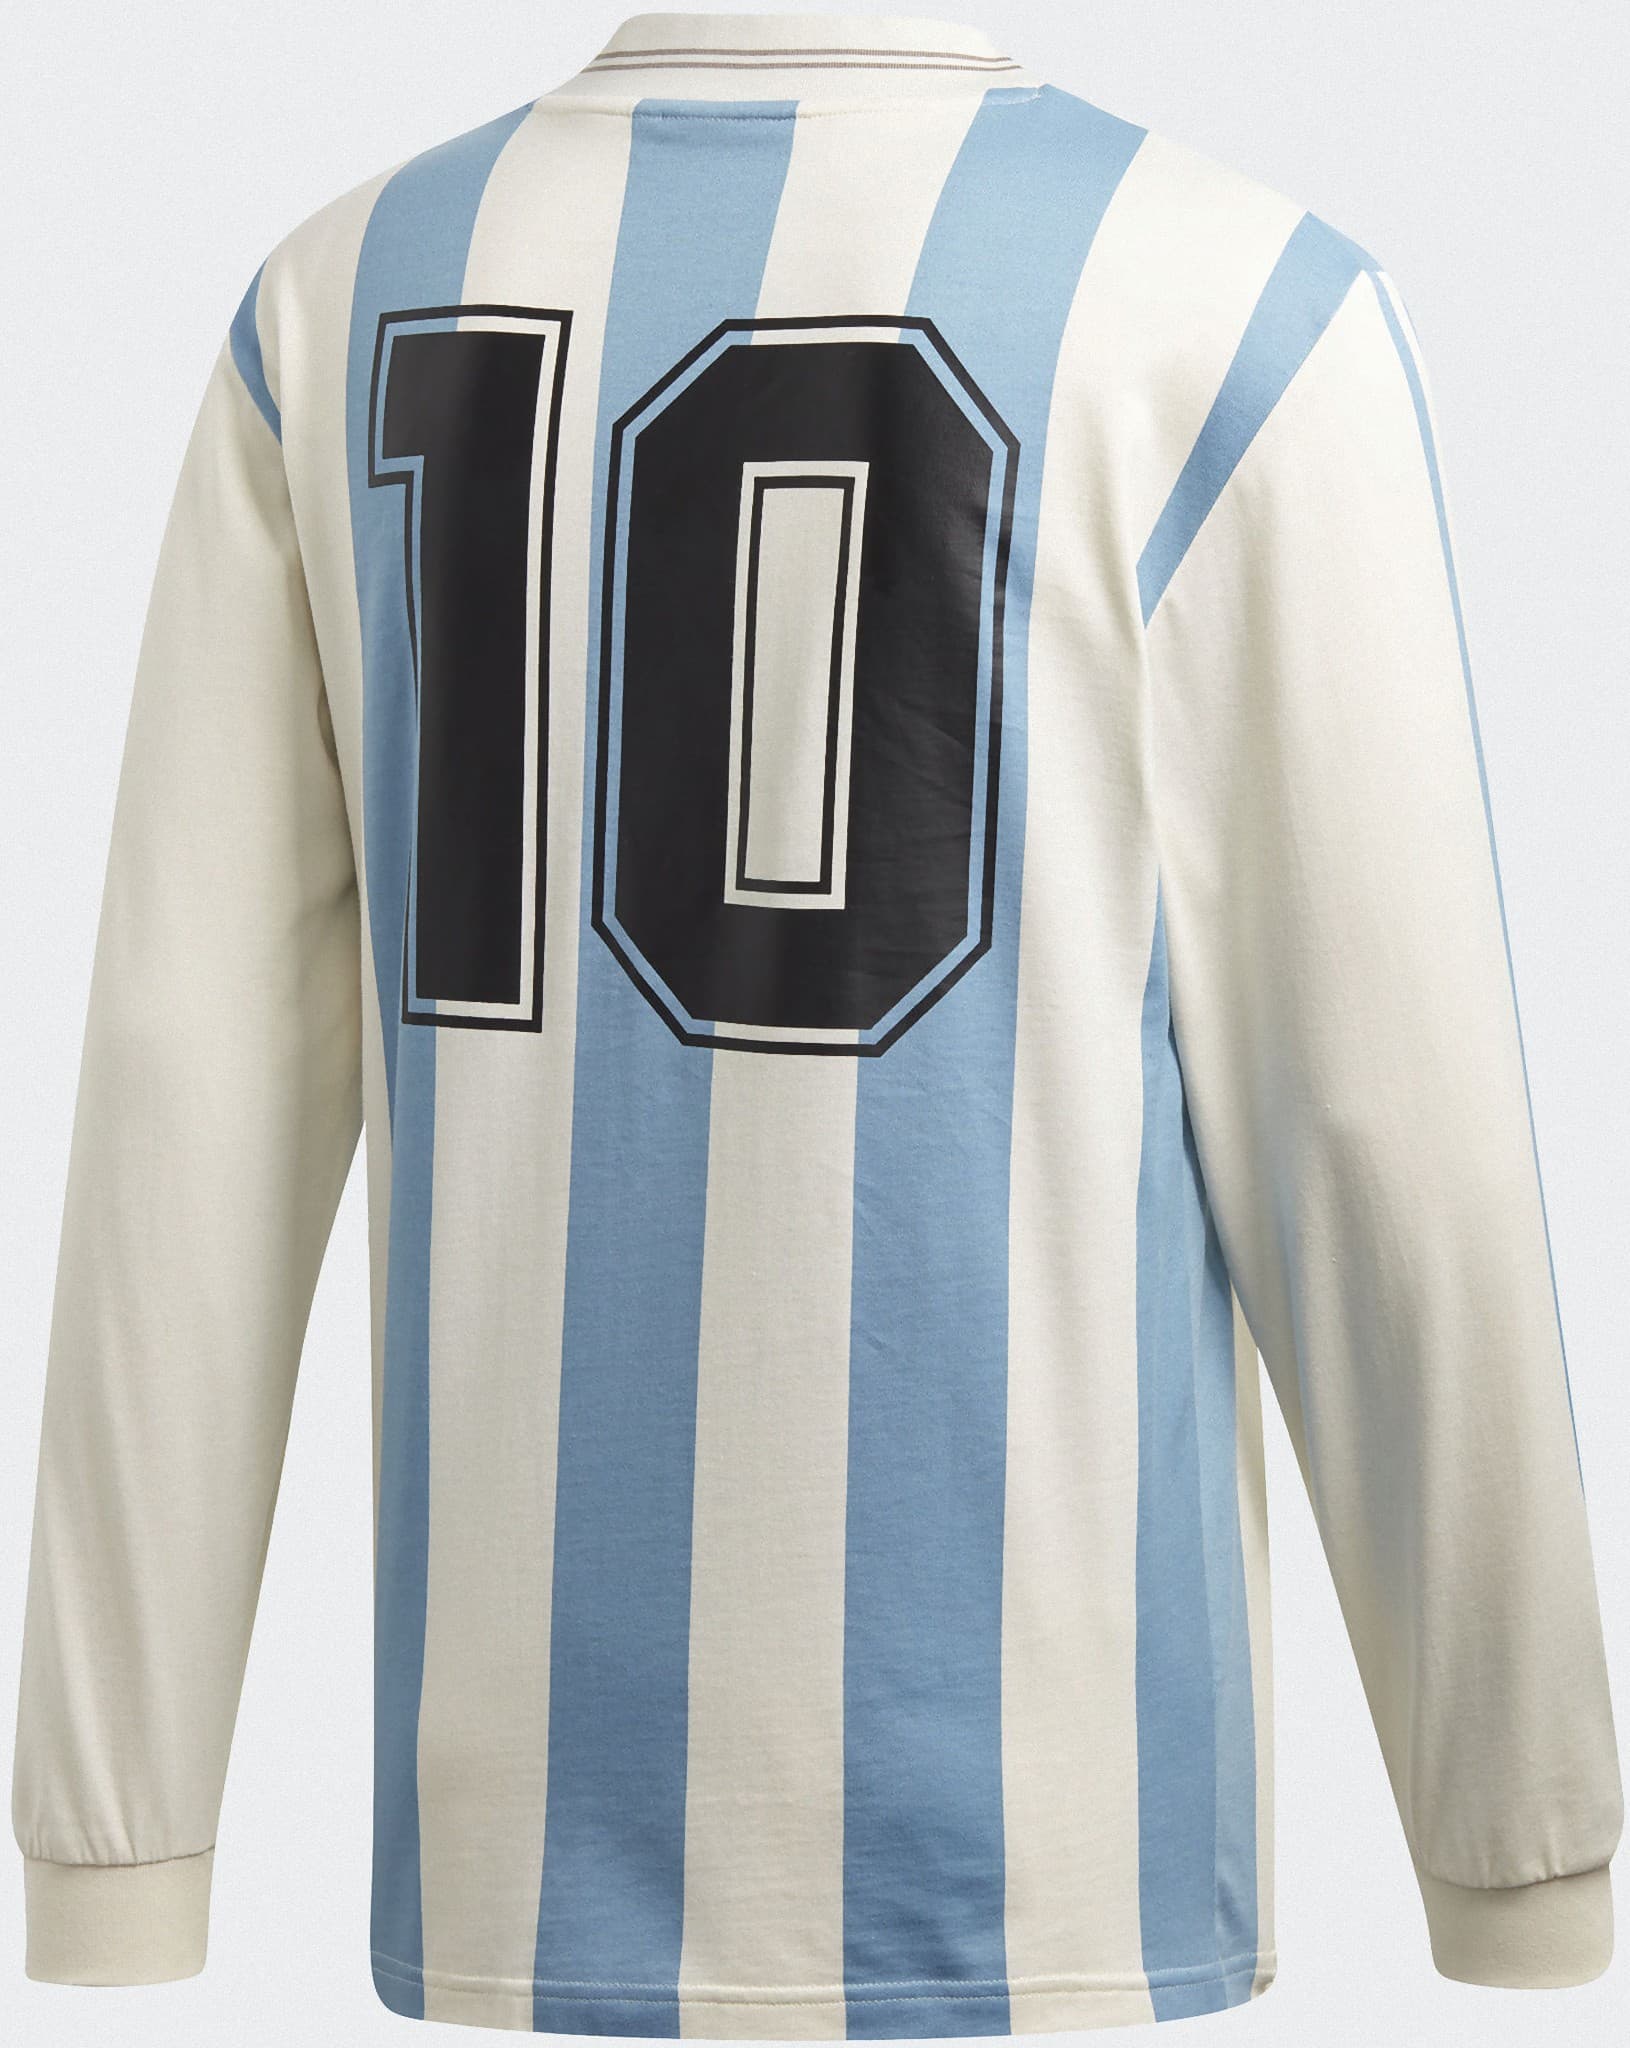 アルゼンチン代表 1993 アディダスオリジナルスユニフォーム - ユニ11